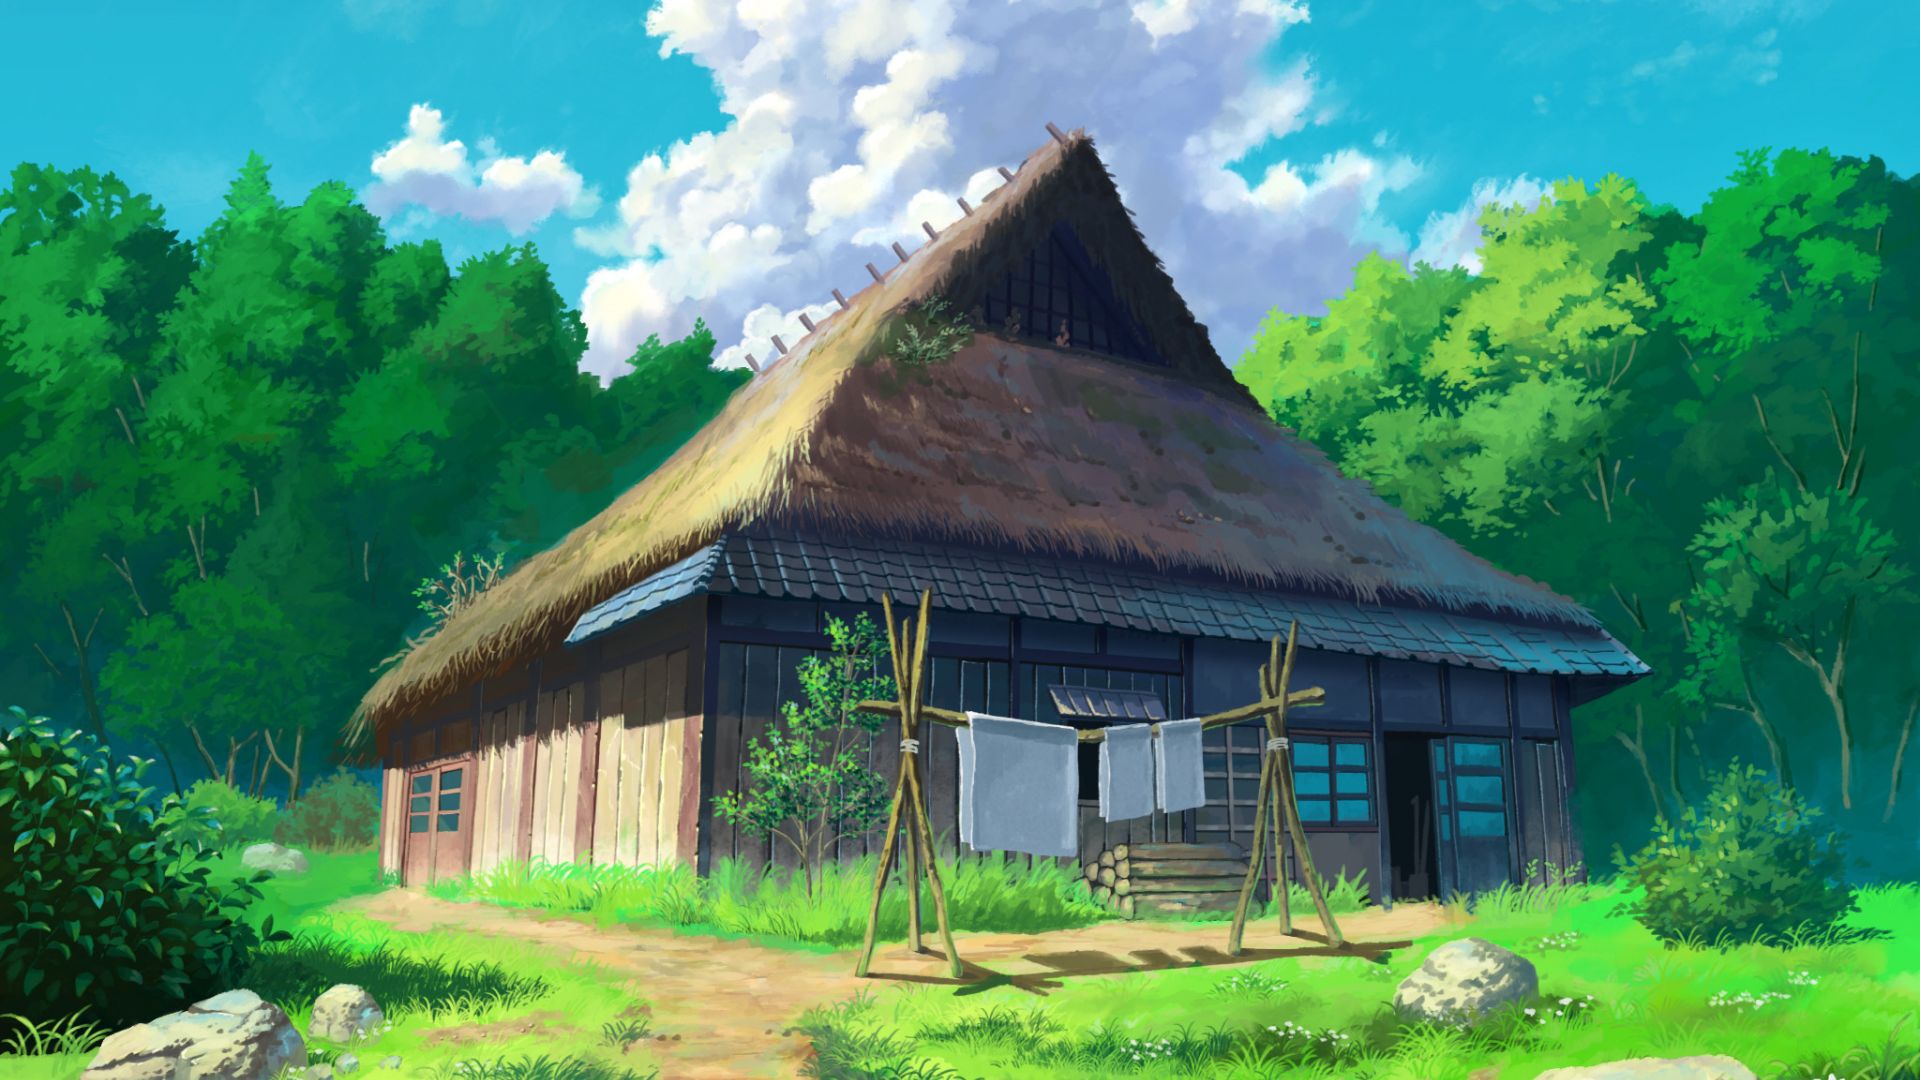 Studio Ghibli | Studio ghibli, Outdoor, Farmland